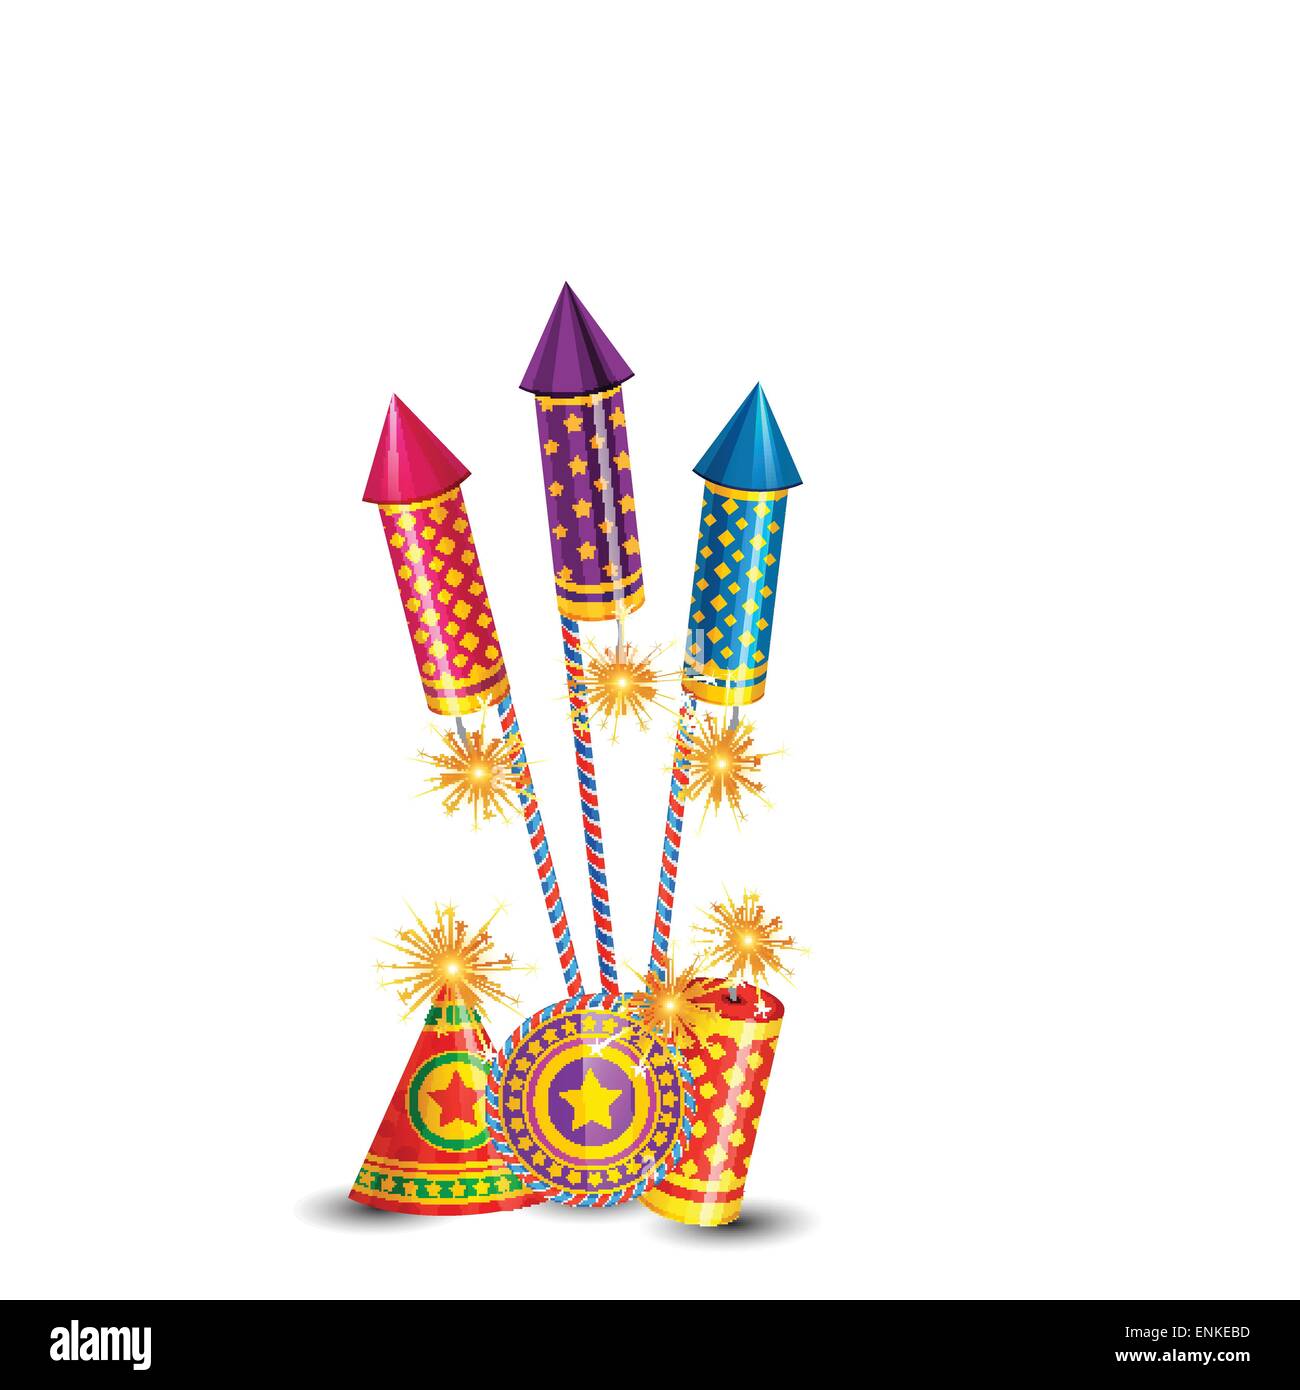 Vector diwali crackers background Stock Vector Image & Art - Alamy